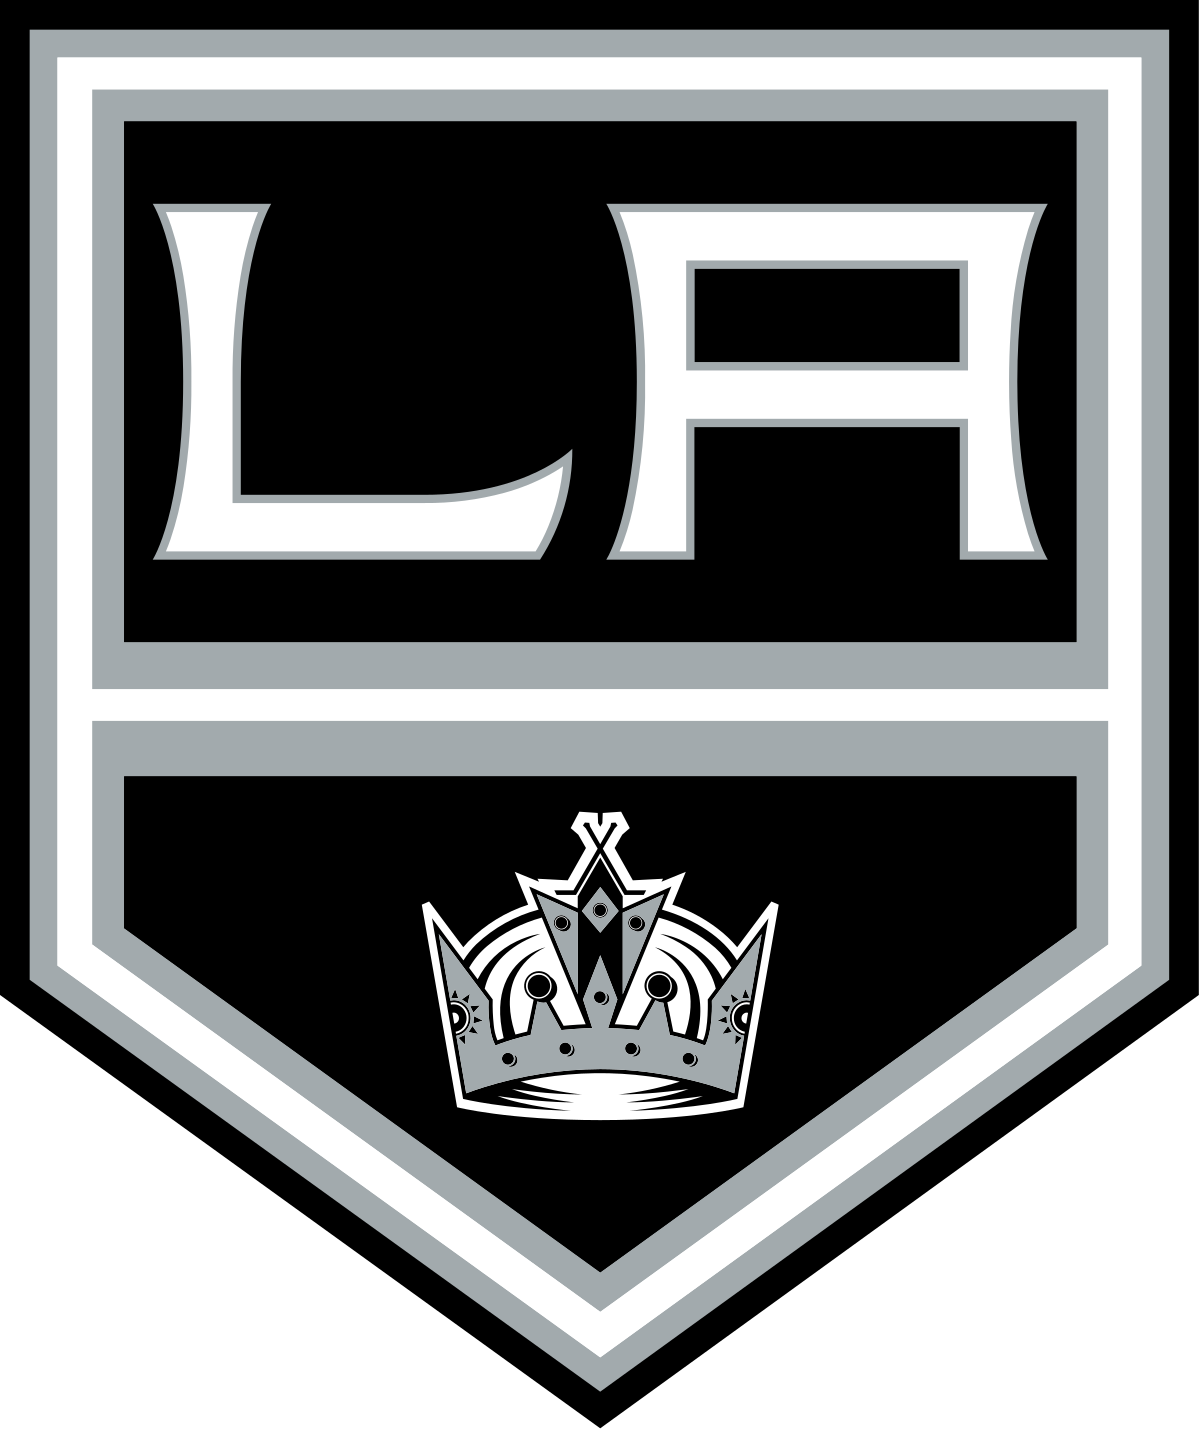 Los Angeles Kings | Organizational Profile, Work & Jobs